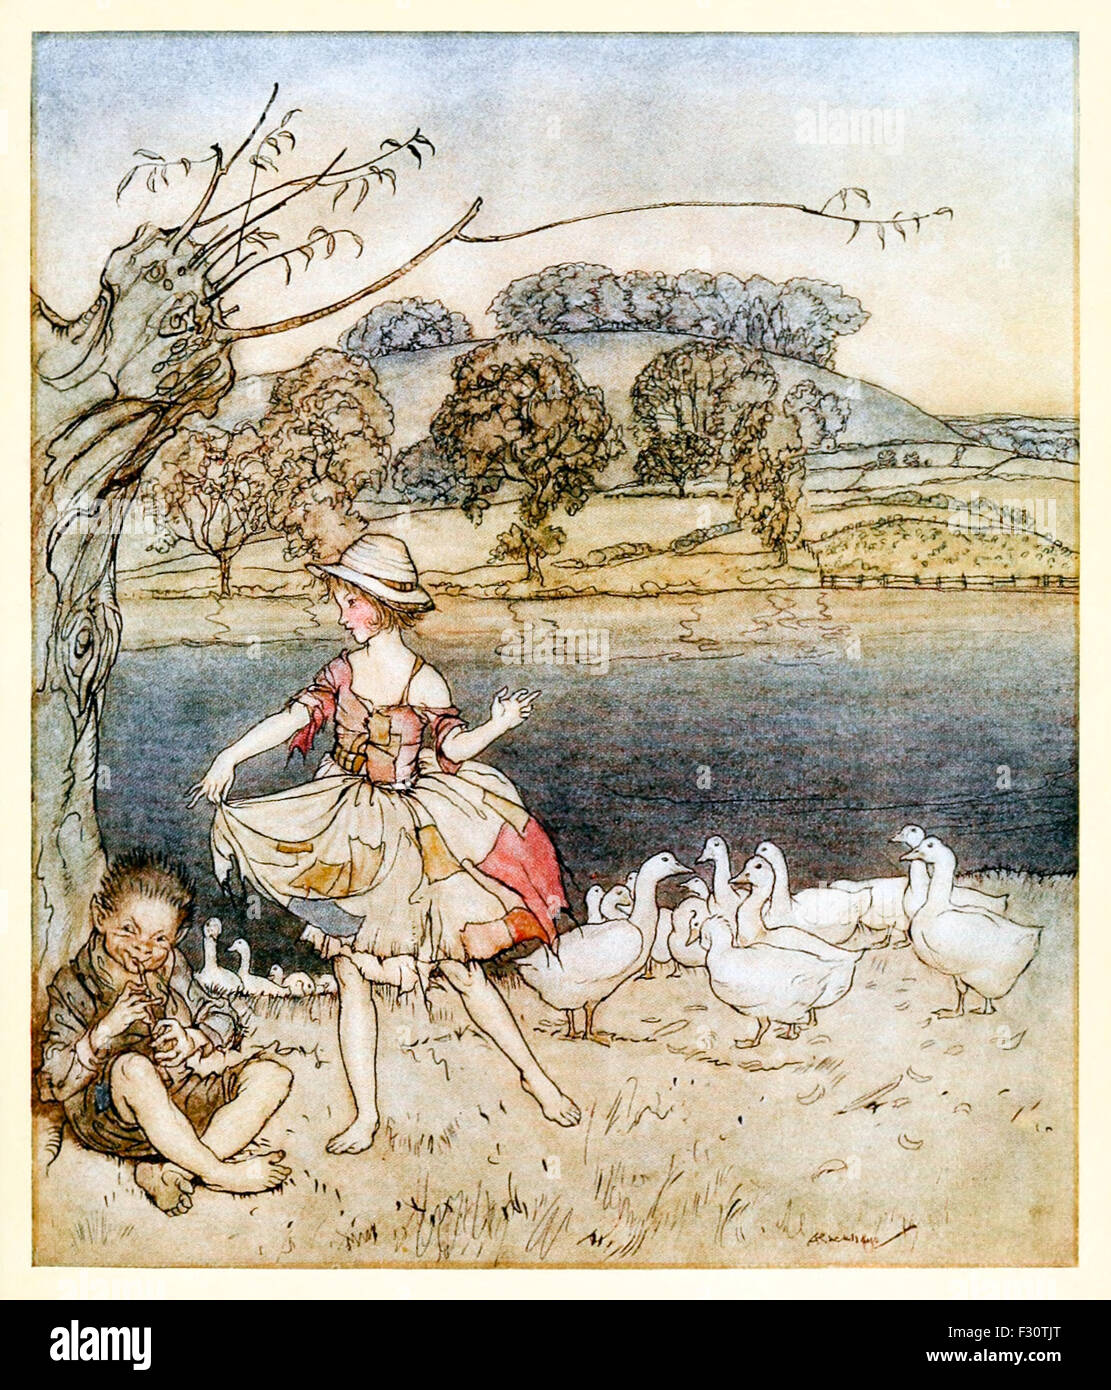 'Tattercoats gooseherd la danse tandis que les tuyaux.' de 'Tattercoat' dans 'English Fairy Tales', illustration par Arthur Rackham (1867-1939). Voir la description pour plus d'informations. Banque D'Images